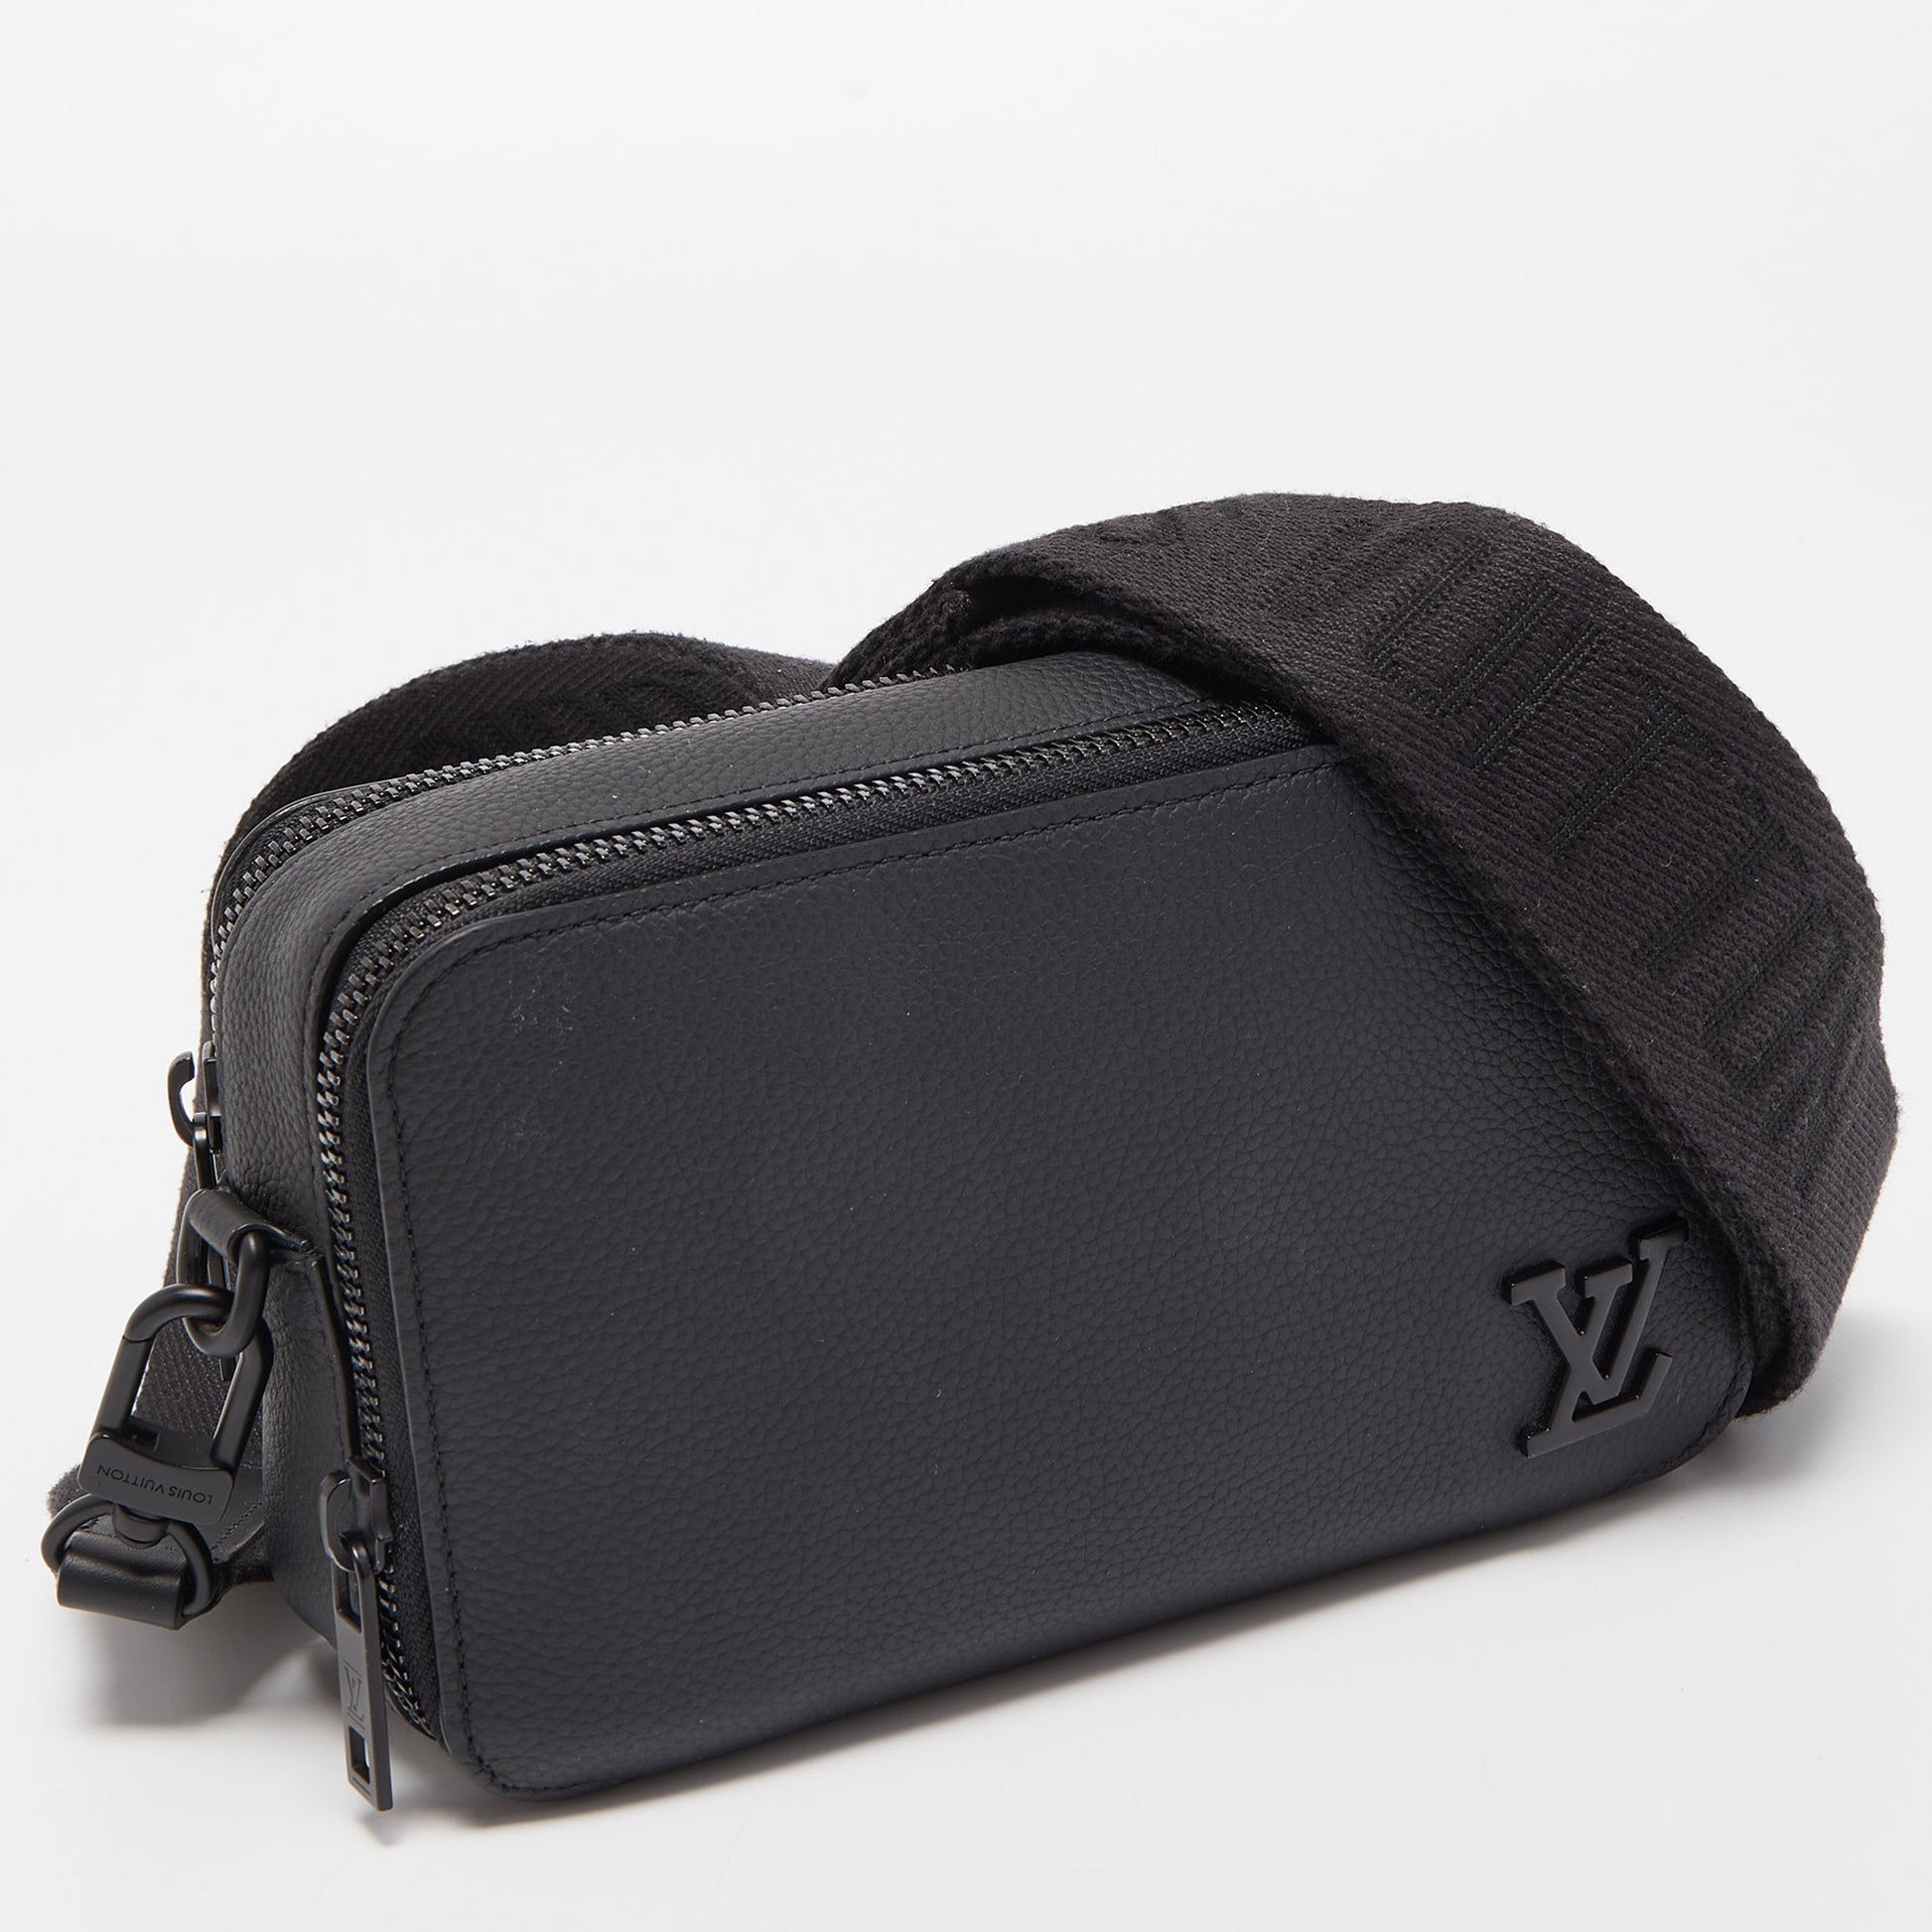 Louis Vuitton Alpha Wearable Wallet cloth satchel - ShopStyle